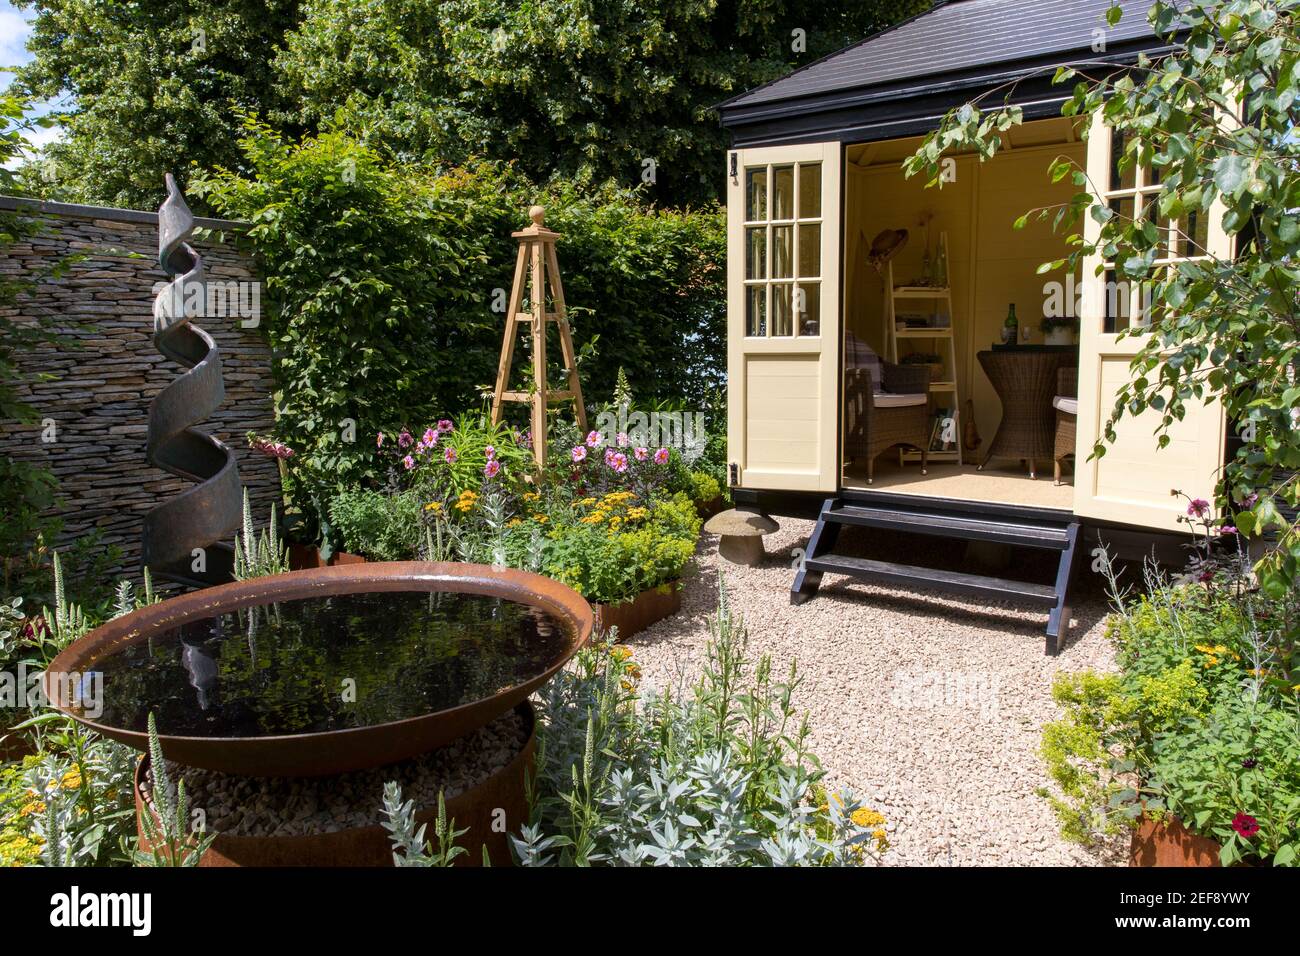 Un petit jardin cottage anglais avec Summerhouse Shepherds Hut dans le jardin de gravier - travail du bureau à domicile - eau caractéristique sculpture en spirale obélisque UK Banque D'Images